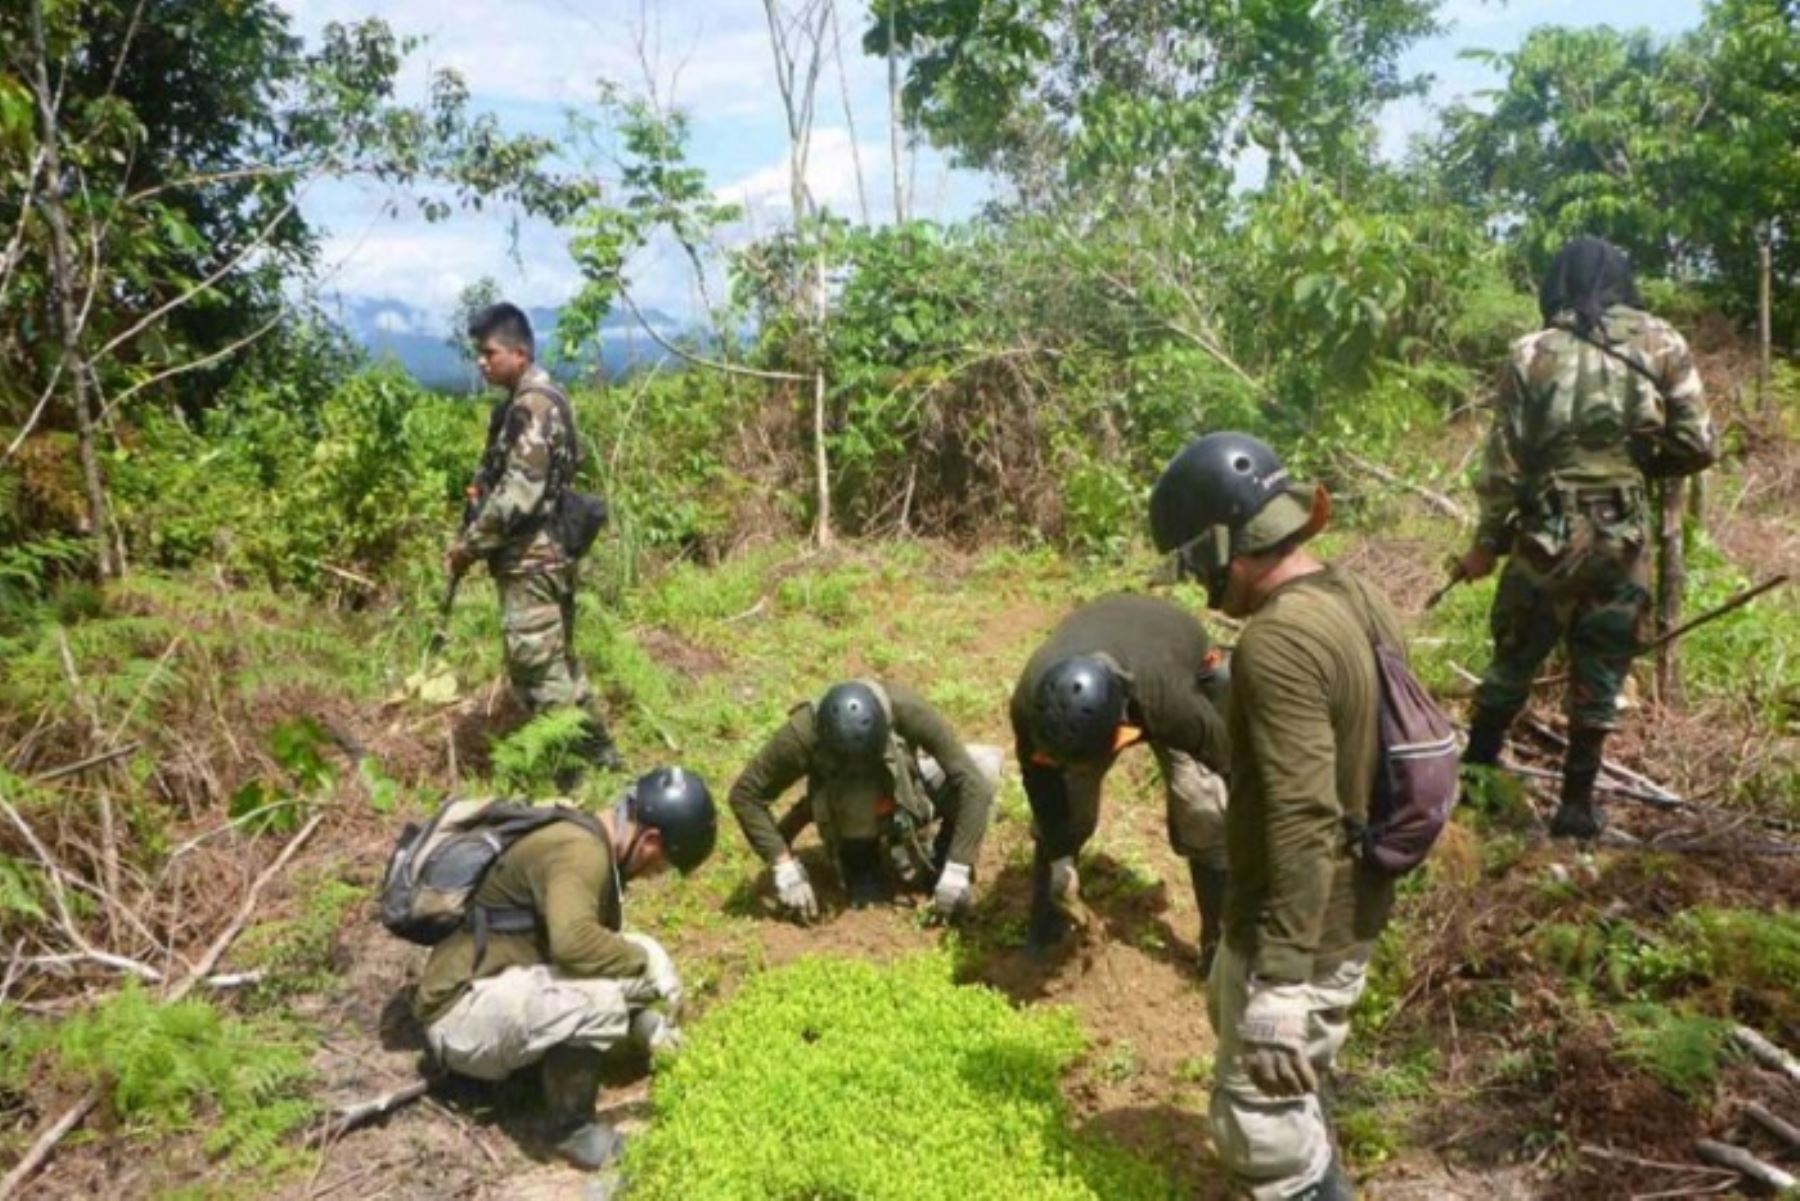 Con apoyo de la Policía Nacional, el Proyecto Especial de Control y Reducción de Cultivos Ilegales en el Alto Huallaga (Corah), erradicó 13 271.39 hectáreas de plantaciones ilegales de coca en el período de febrero a junio 2018. Asimismo, destruyó 38 laboratorios de procesamiento de droga.